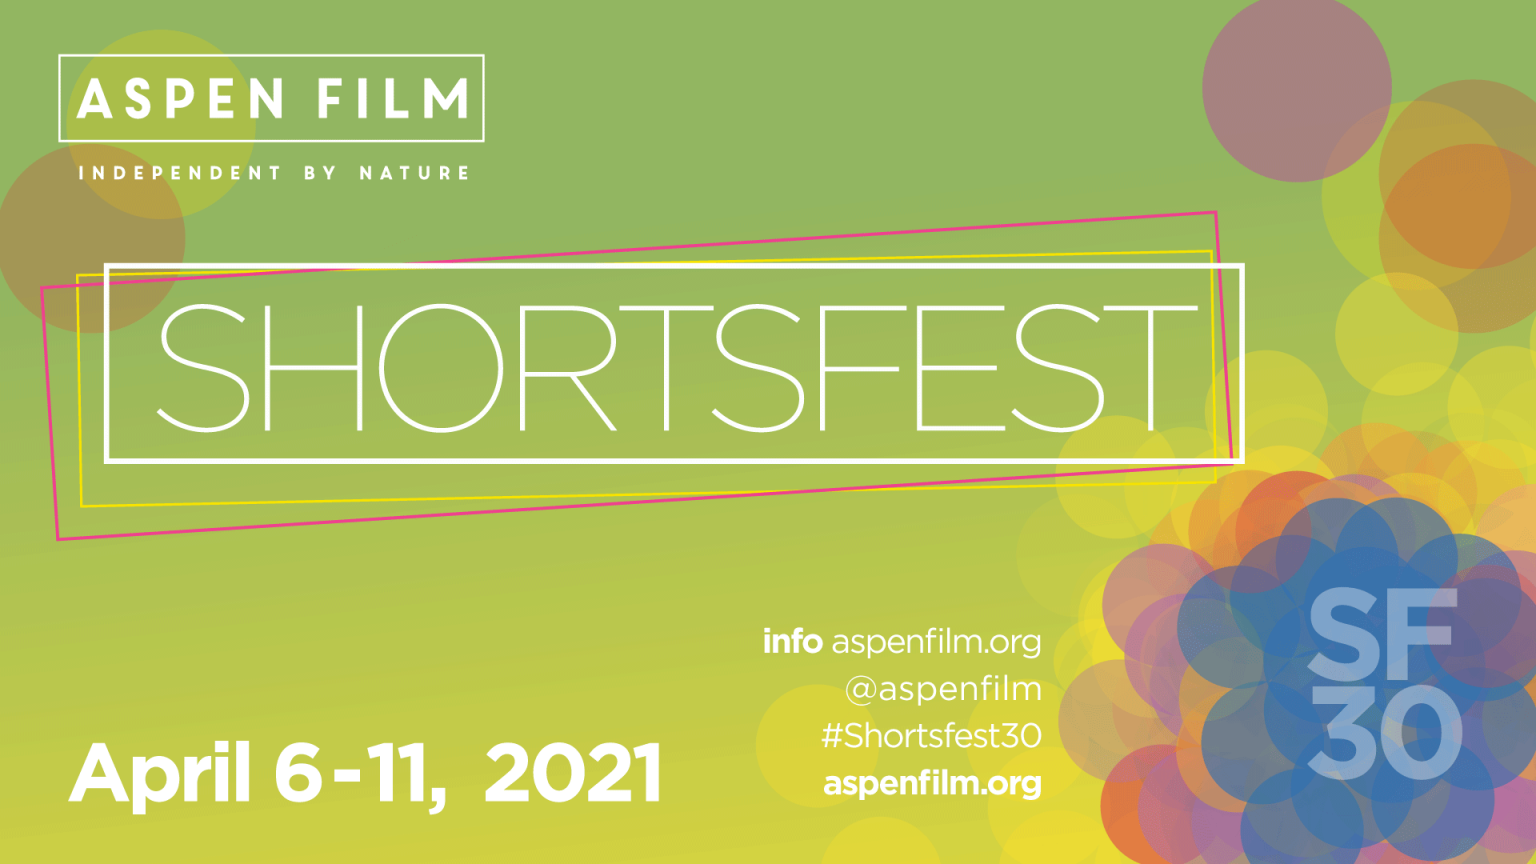 ASPEN FILM ANNOUNCES PLANS FOR 30TH ANNUAL SHORTSFEST Aspen Film